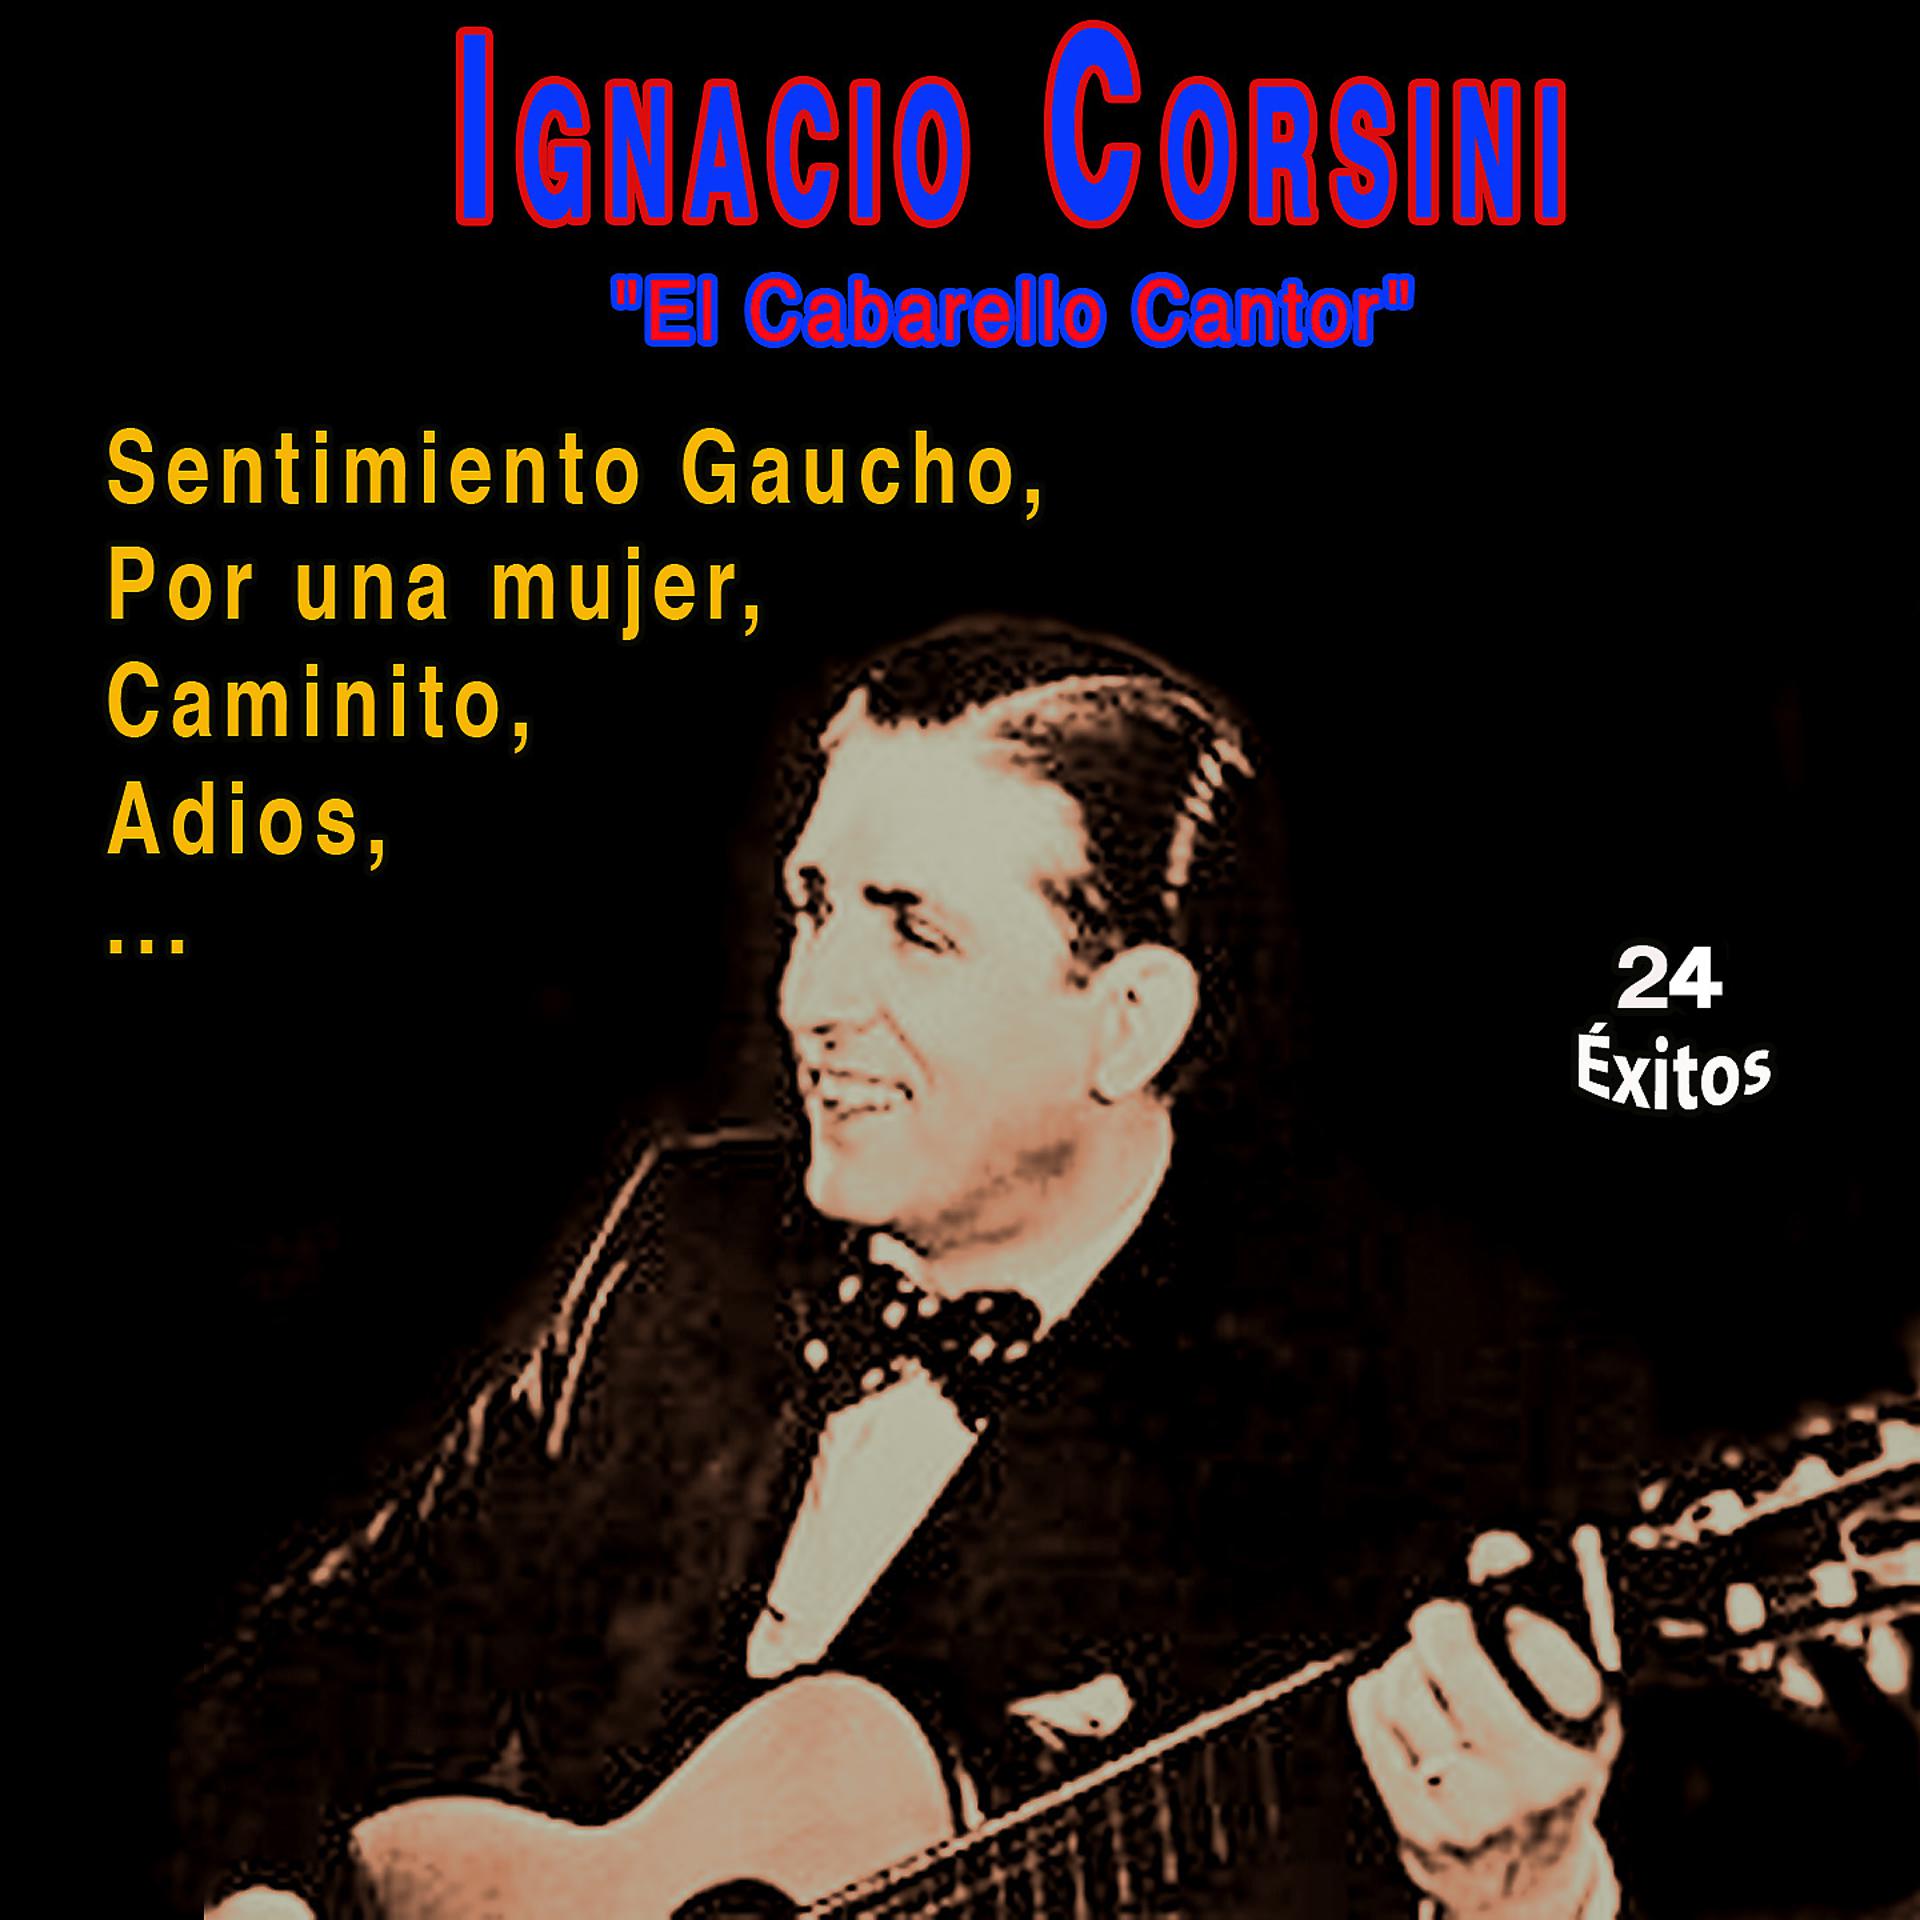 Постер альбома "El Caballero Cantor" Ignacio Corsini